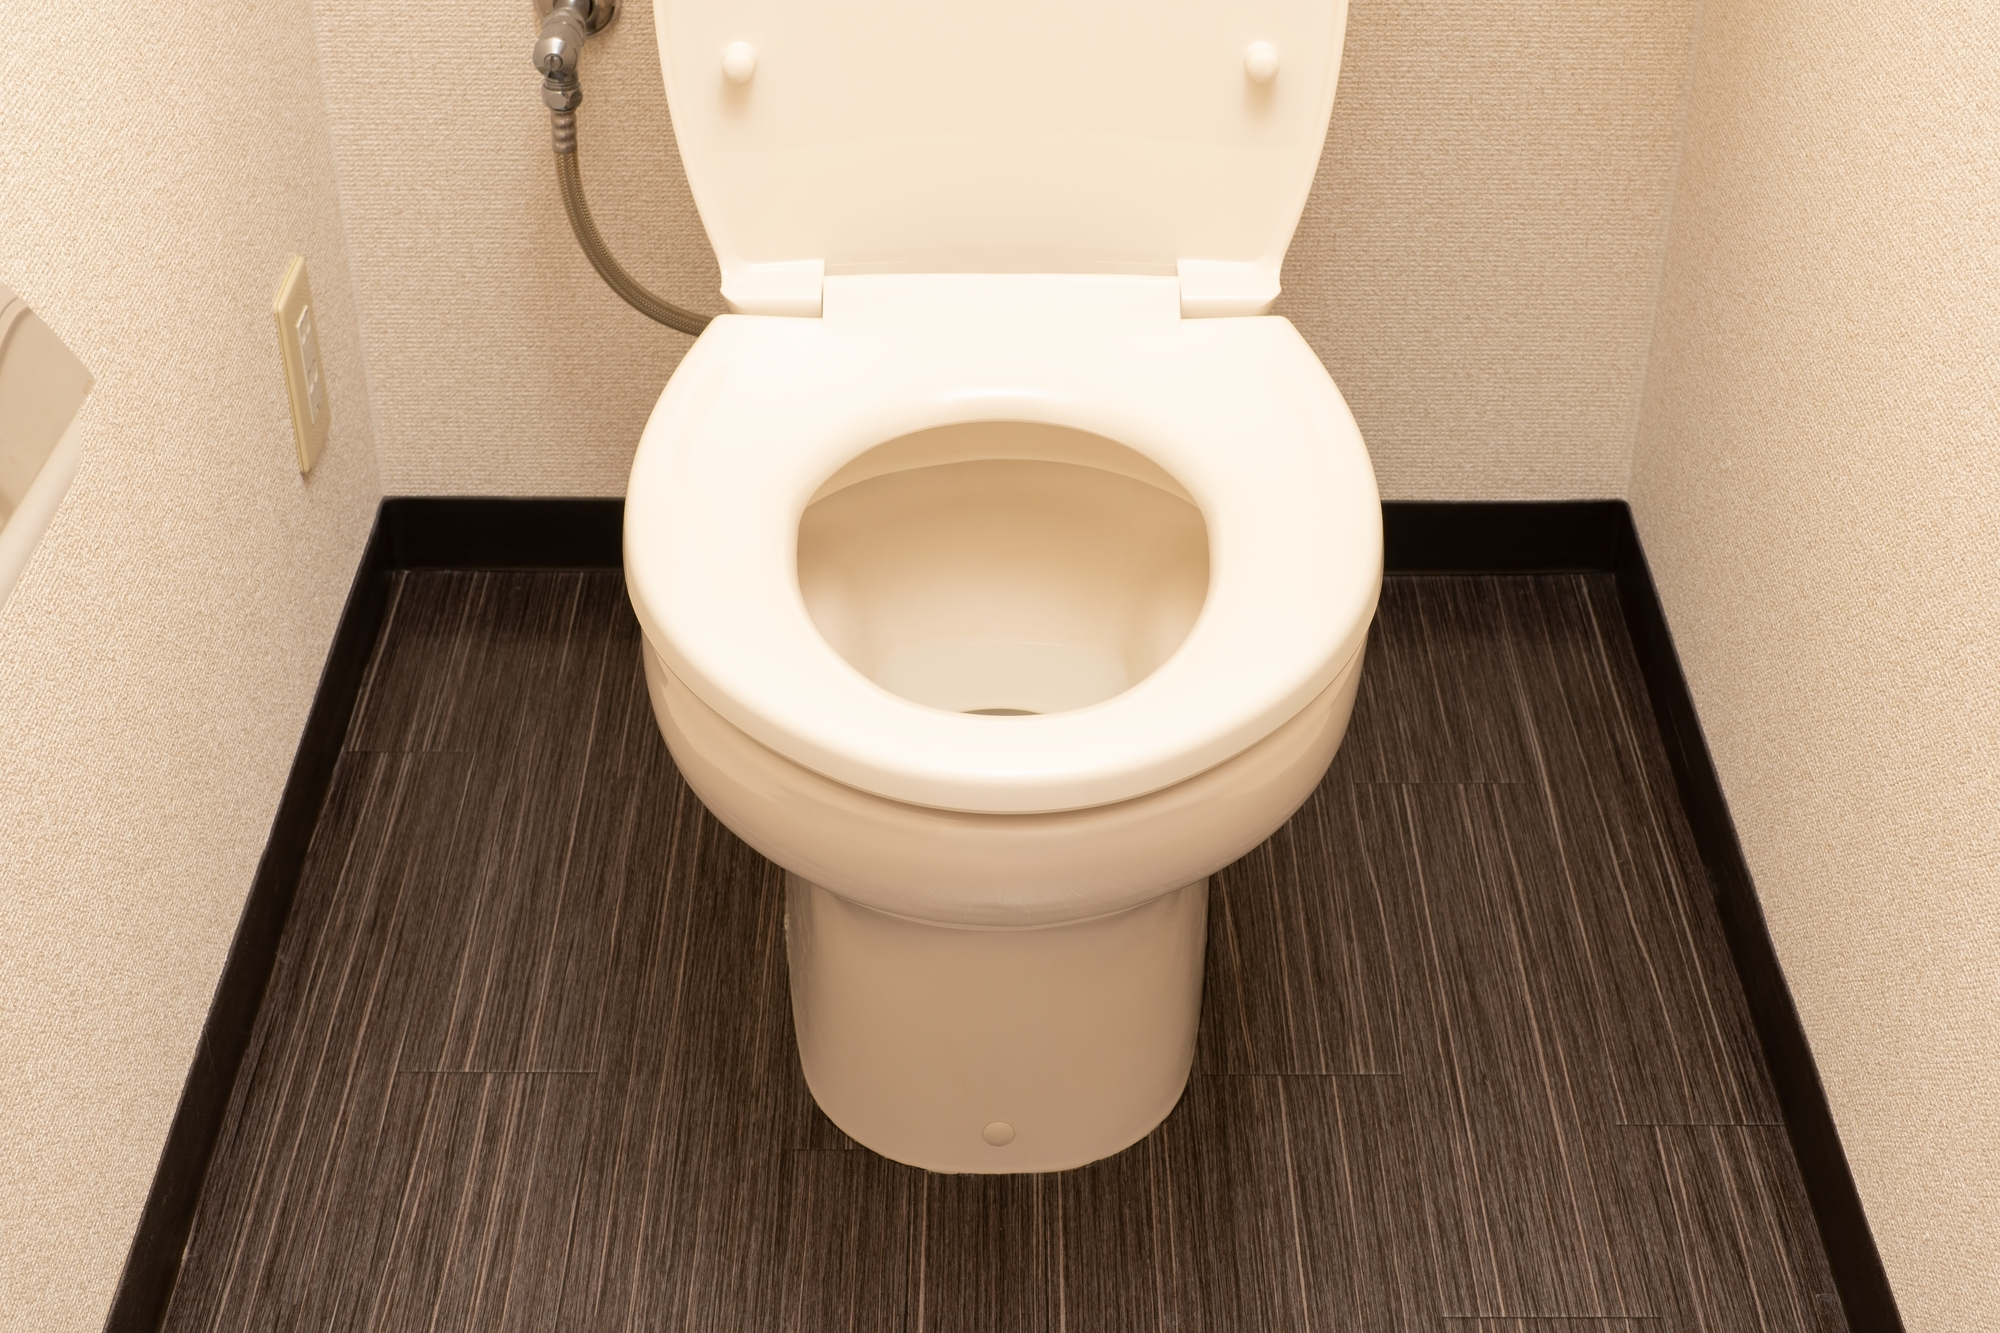 トイレの床が濡れているのは何が原因 水漏れに気付いたらすぐにプロに相談しよう 大阪のトイレのつまり水漏れ 水道修理はおおさか水道職人